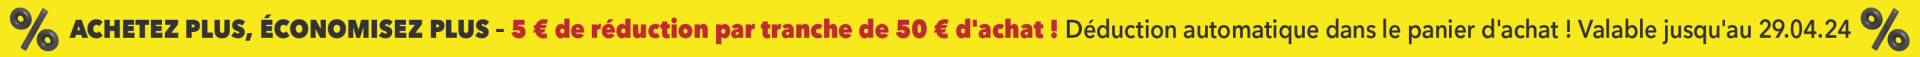 ACHETEZ PLUS, ÉCONOMISEZ PLUS - 5 € de réduction par tranche de 50 € d'achat ! Déduction automatique dans le panier d'achat ! Valable jusqu'au 29.04.24